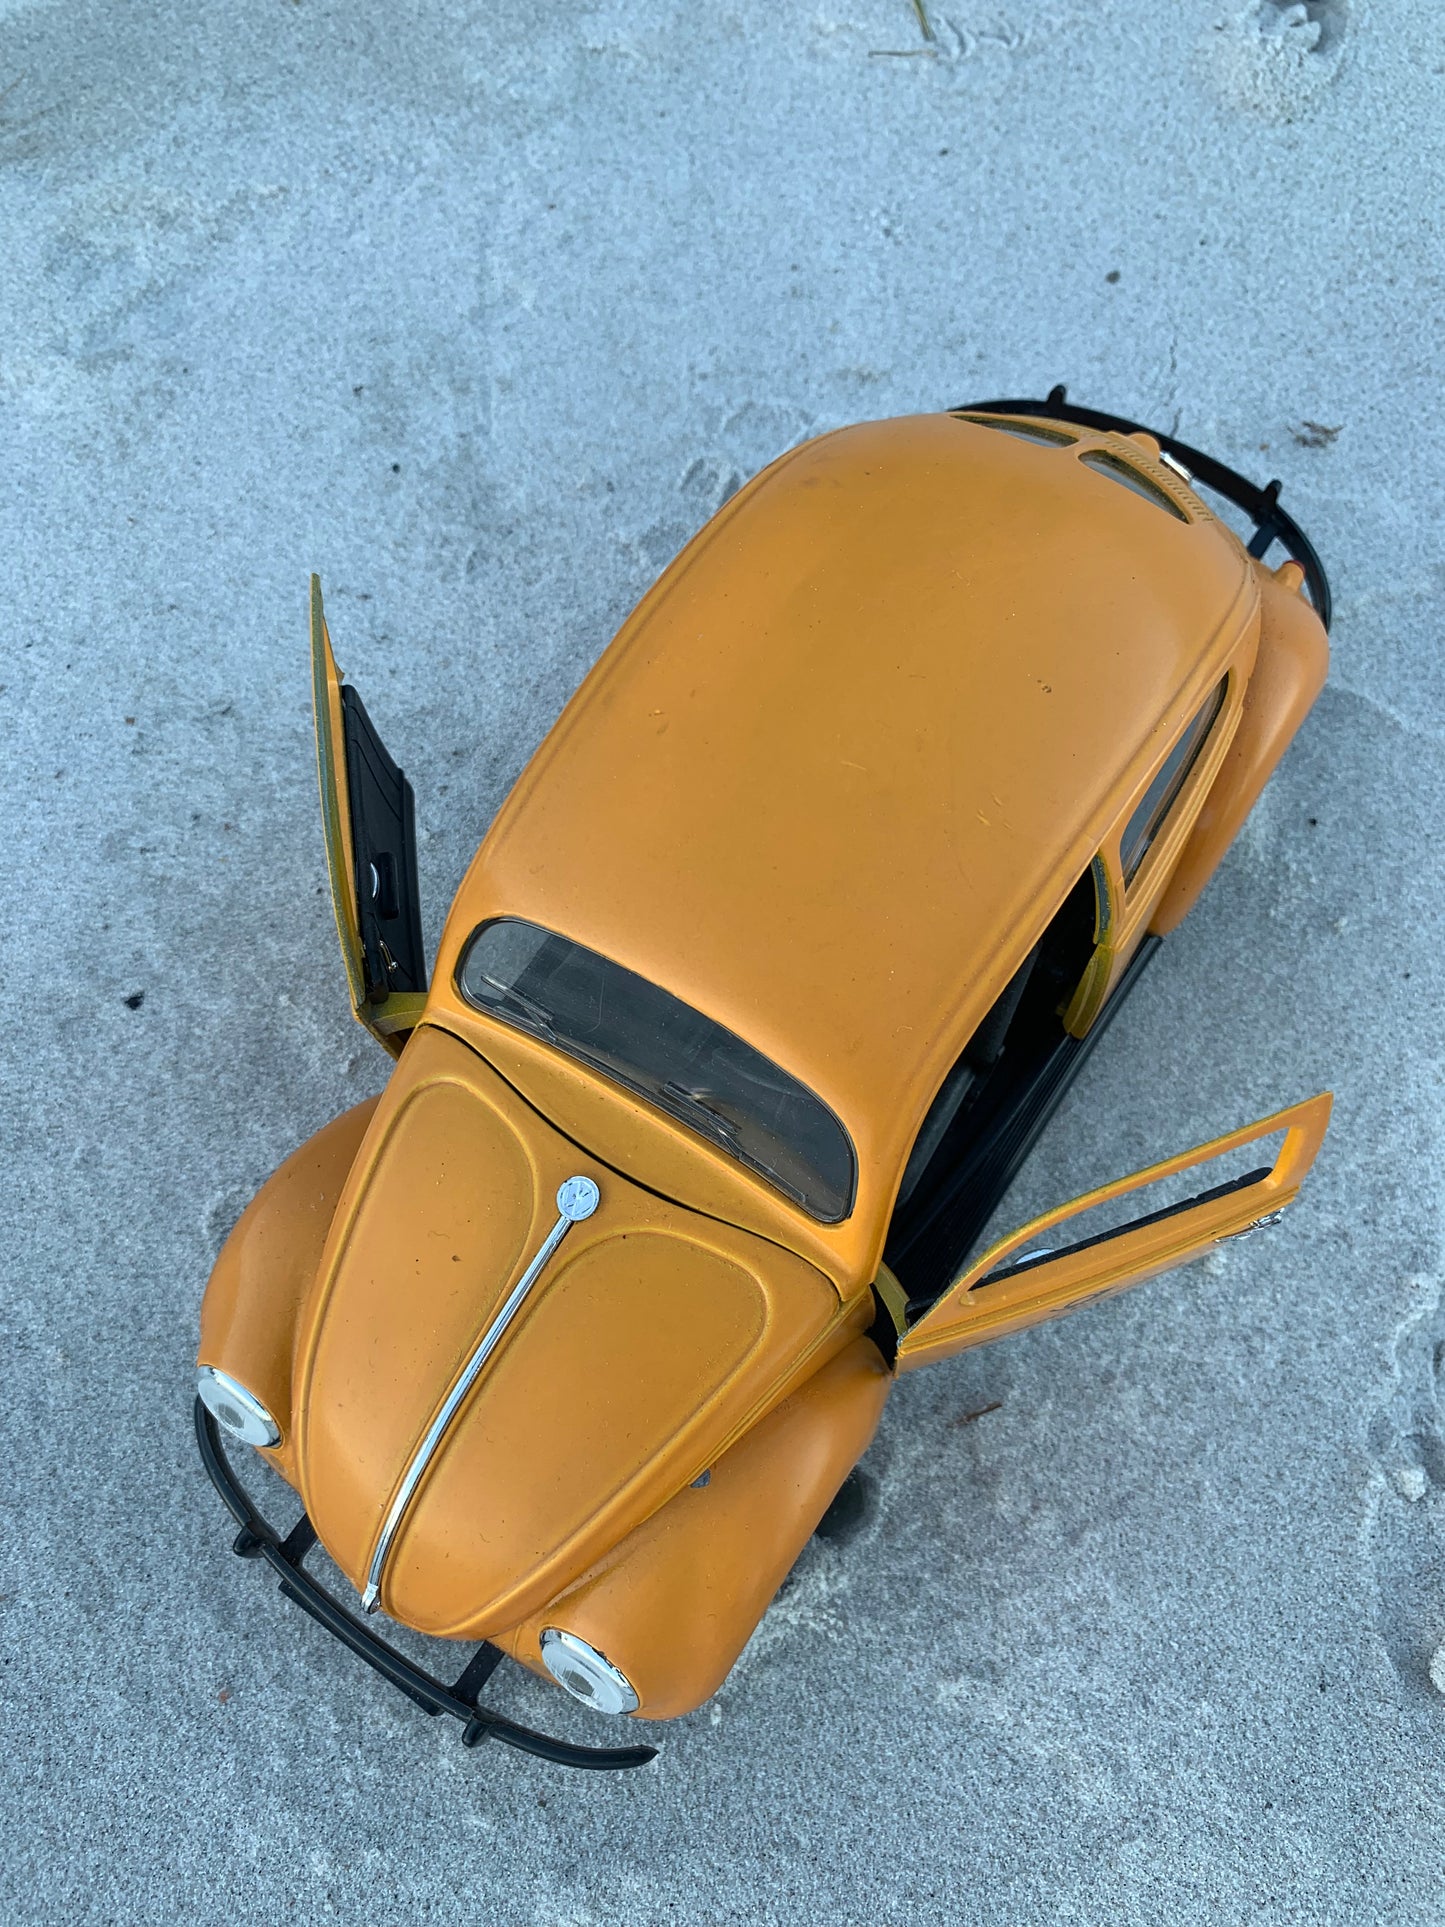 VW Beetle 1949